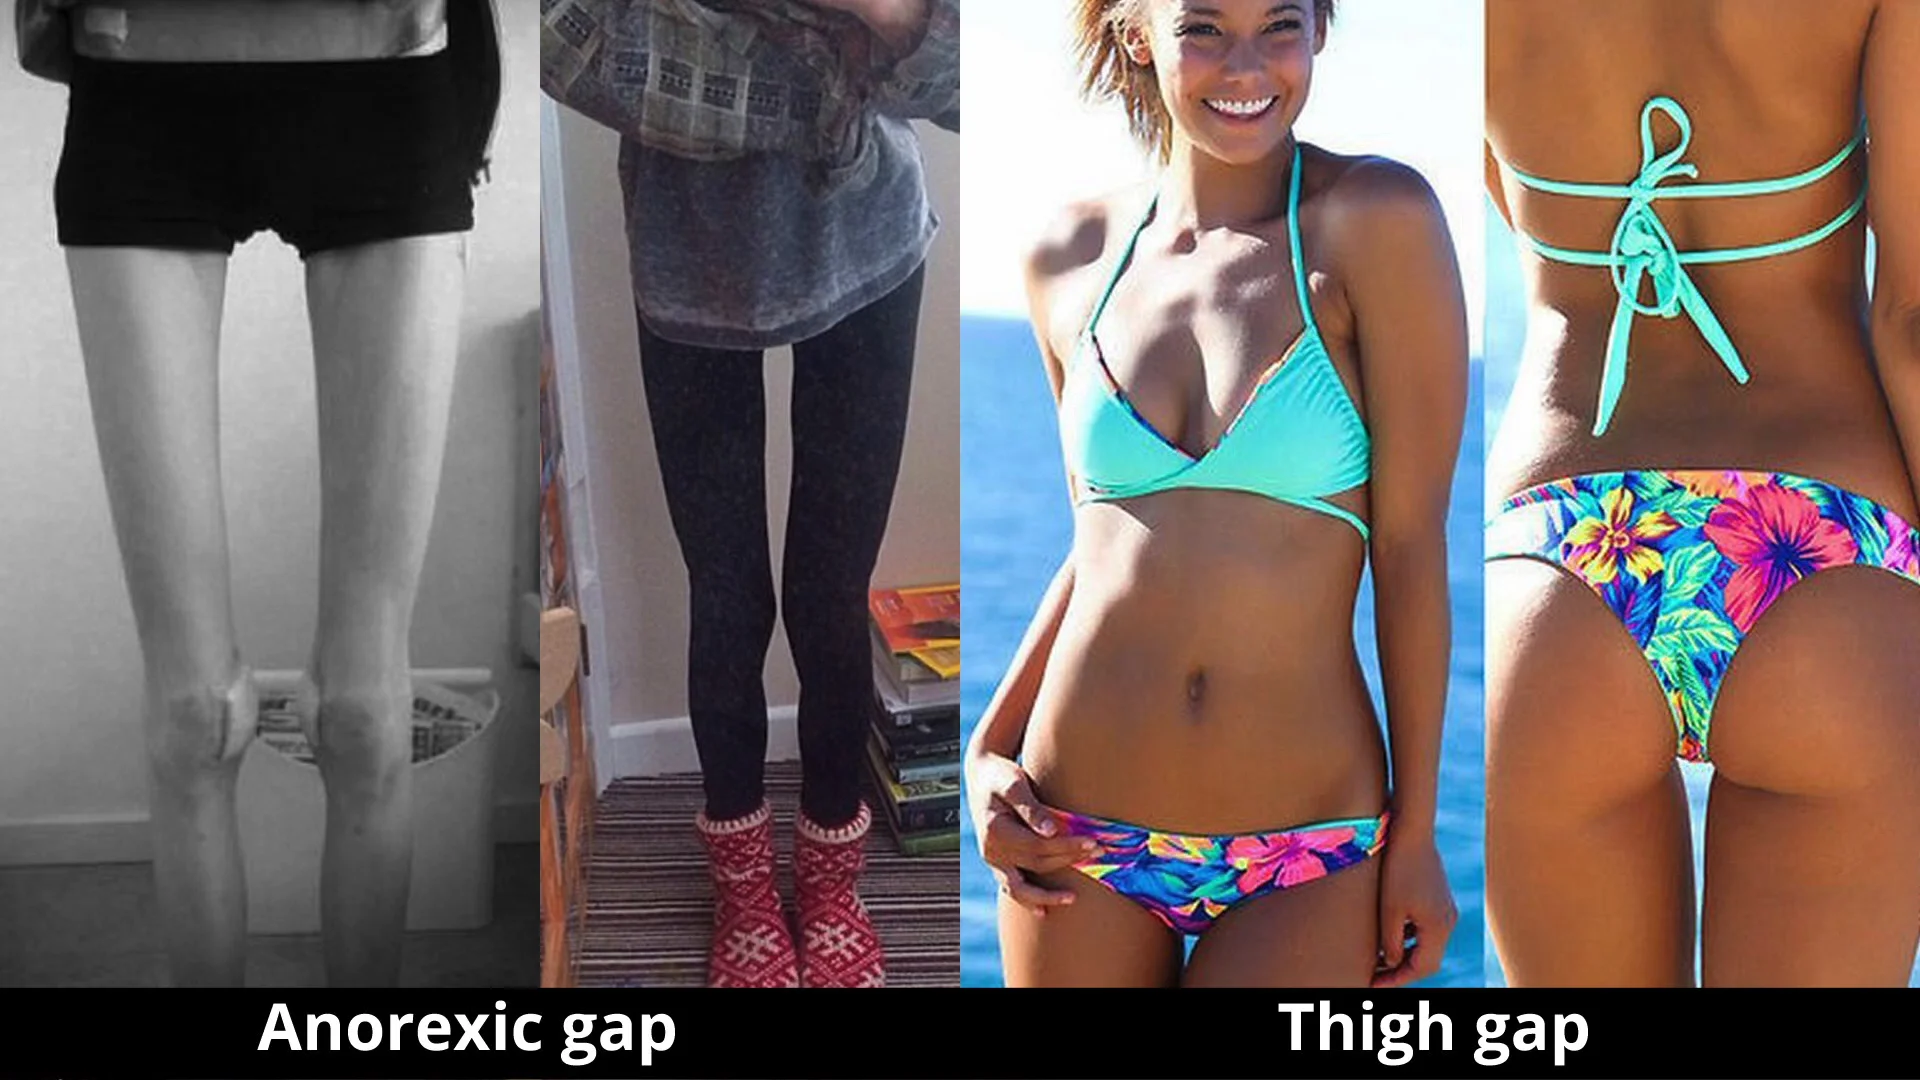 The “Thigh Gap”